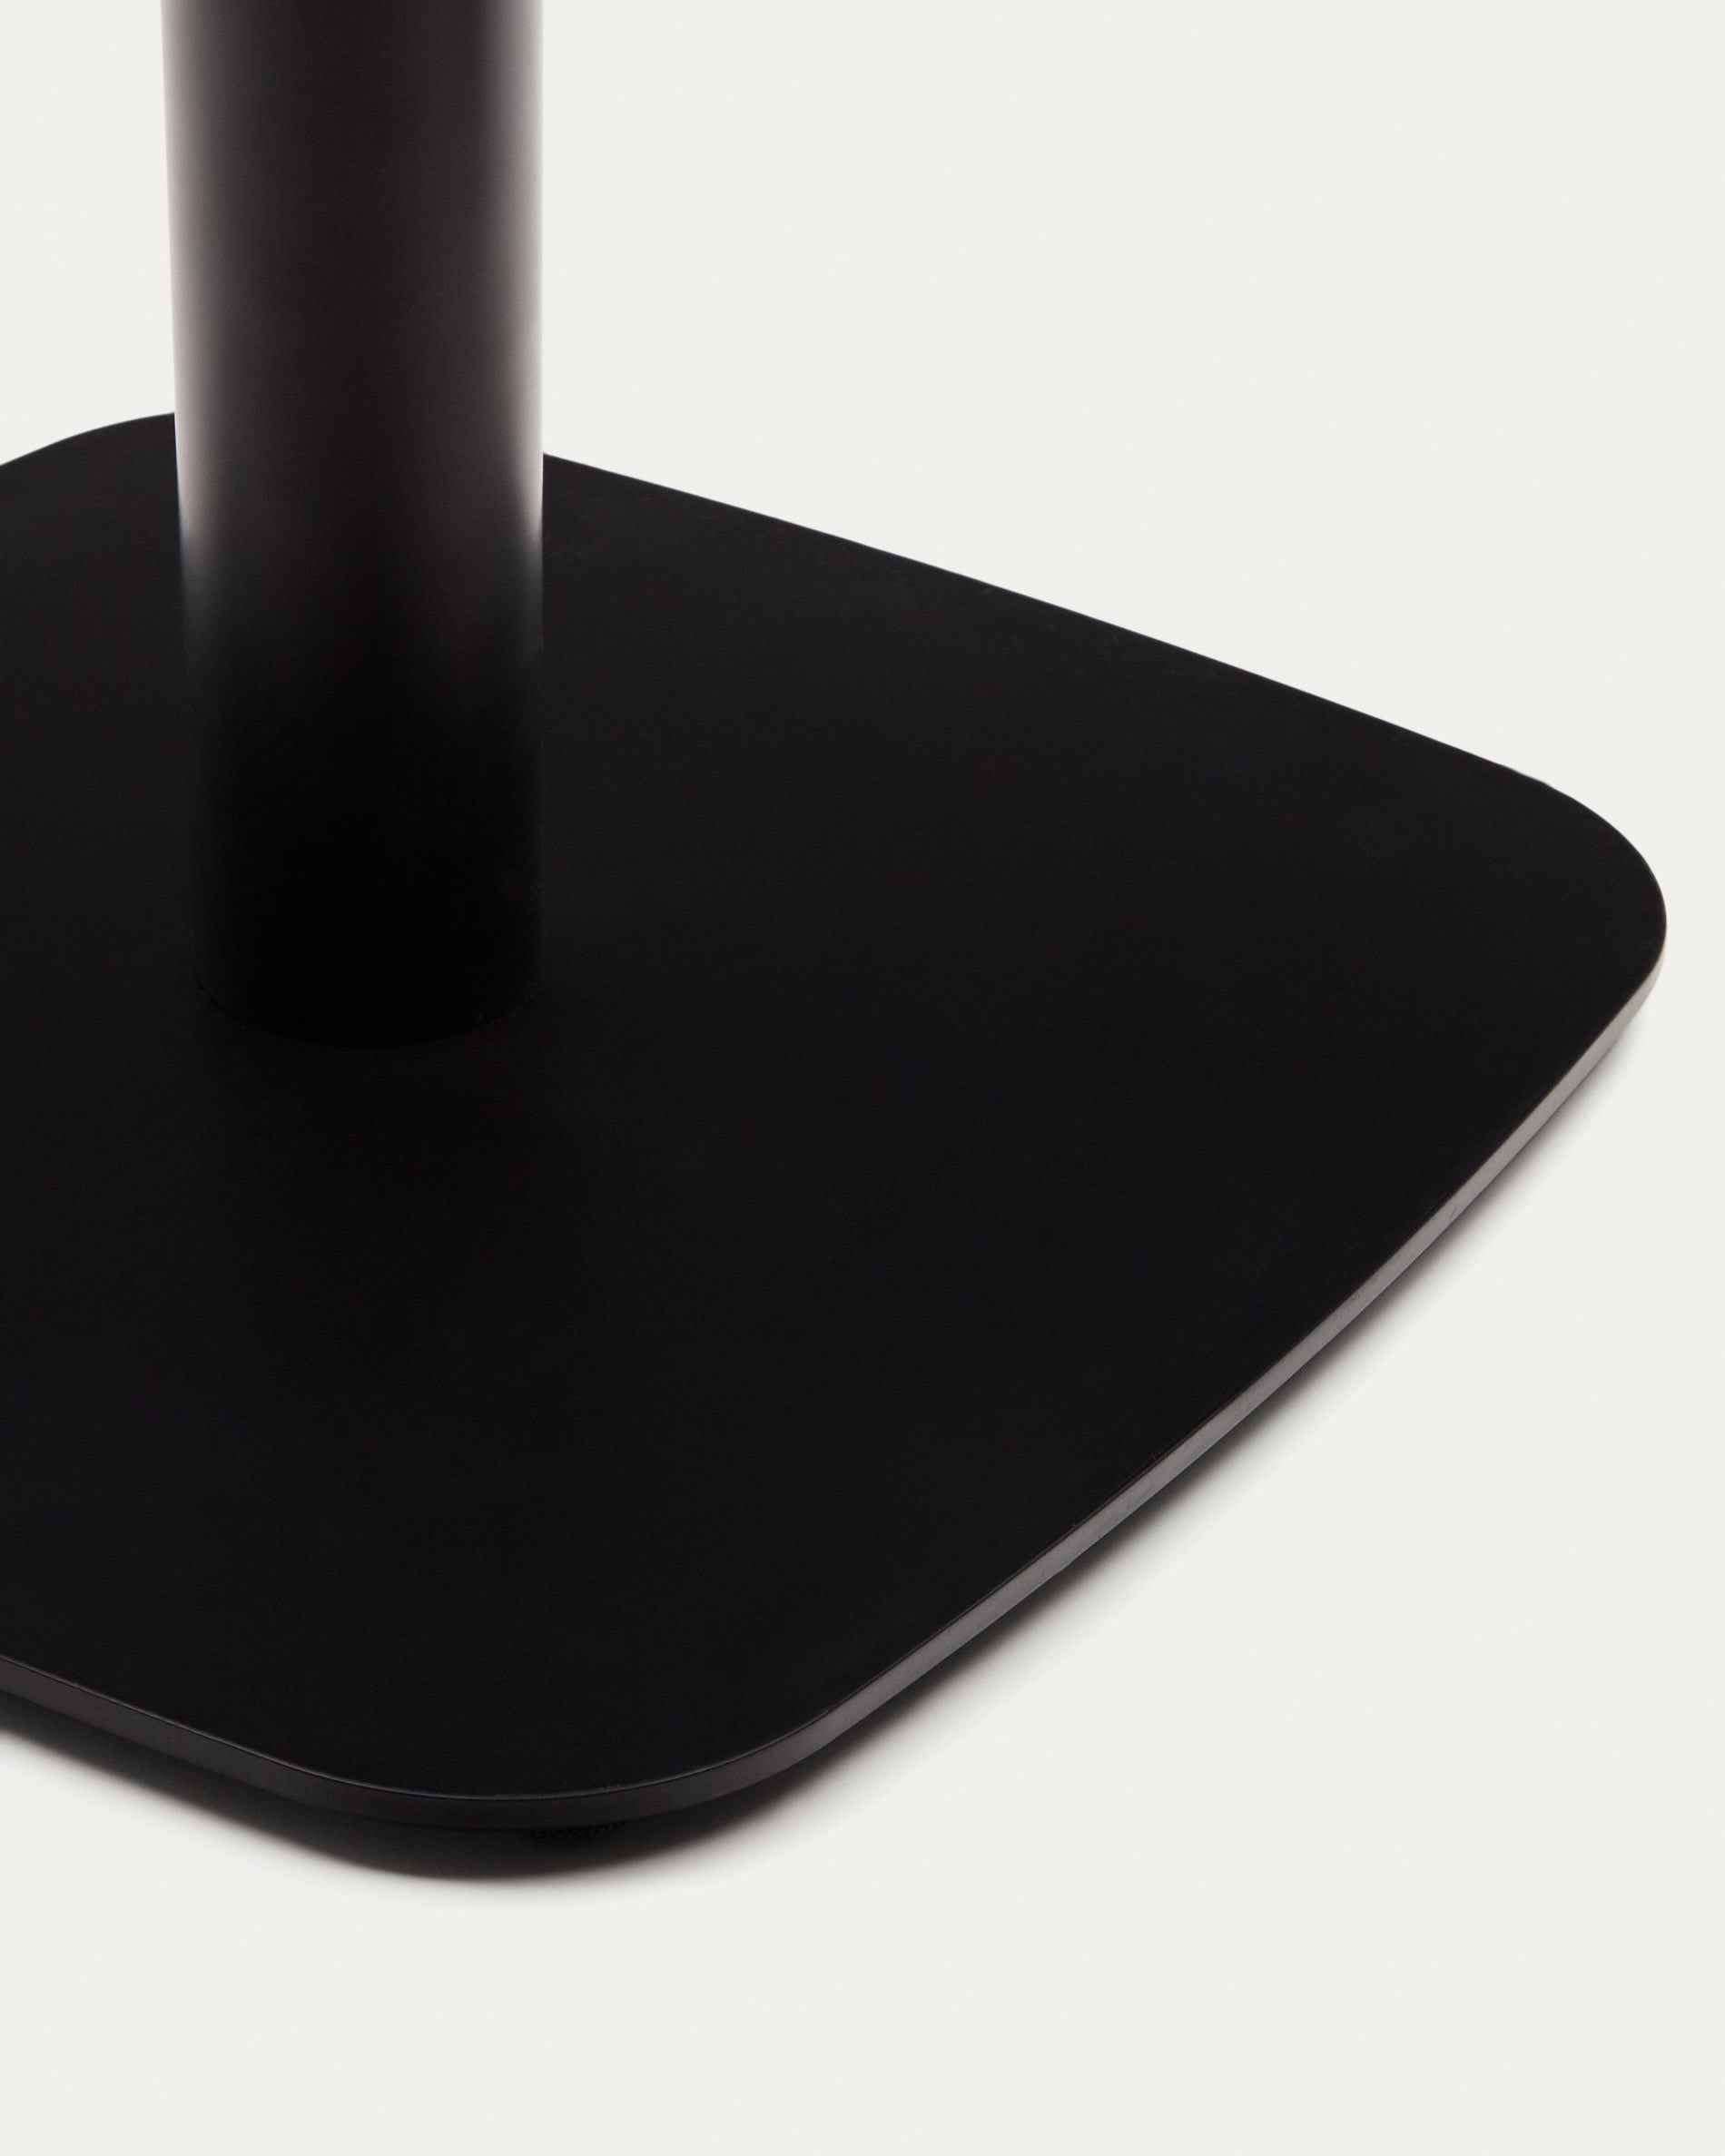 Dina kerek asztal természetes melamin befejezéssel és fém lábbal festett fekete befejezéssel, Ø68x70cm